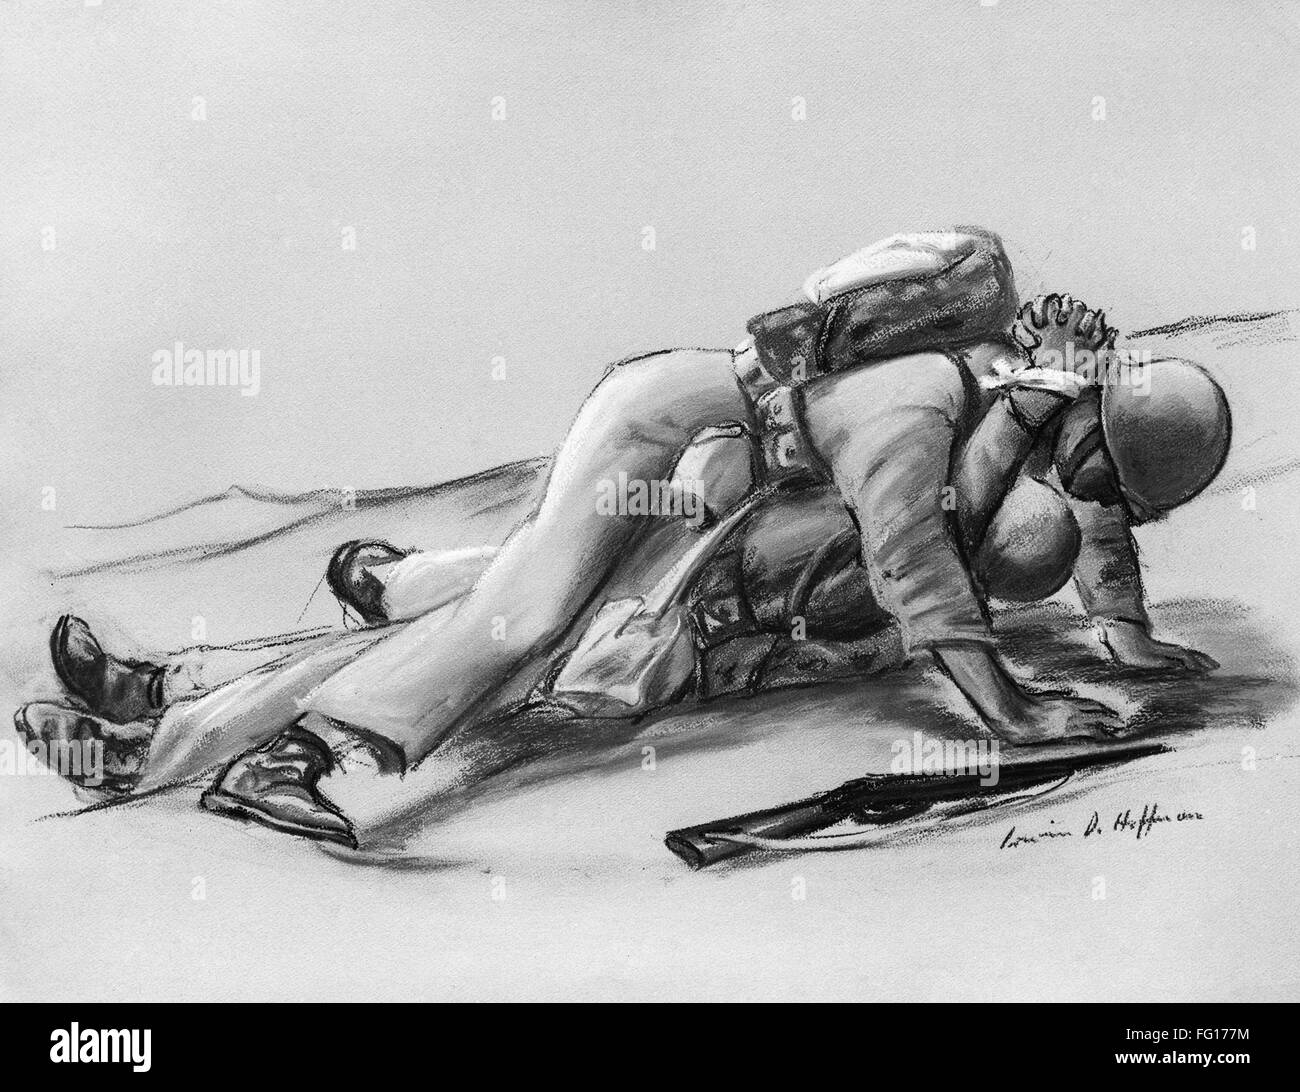 La SEGUNDA GUERRA MUNDIAL: el rescate. /NA ayudante médico del ejército de los Estados Unidos arrastrando un camarada a la seguridad durante la Segunda Guerra Mundial. Dibujo, americano, c1944. Foto de stock